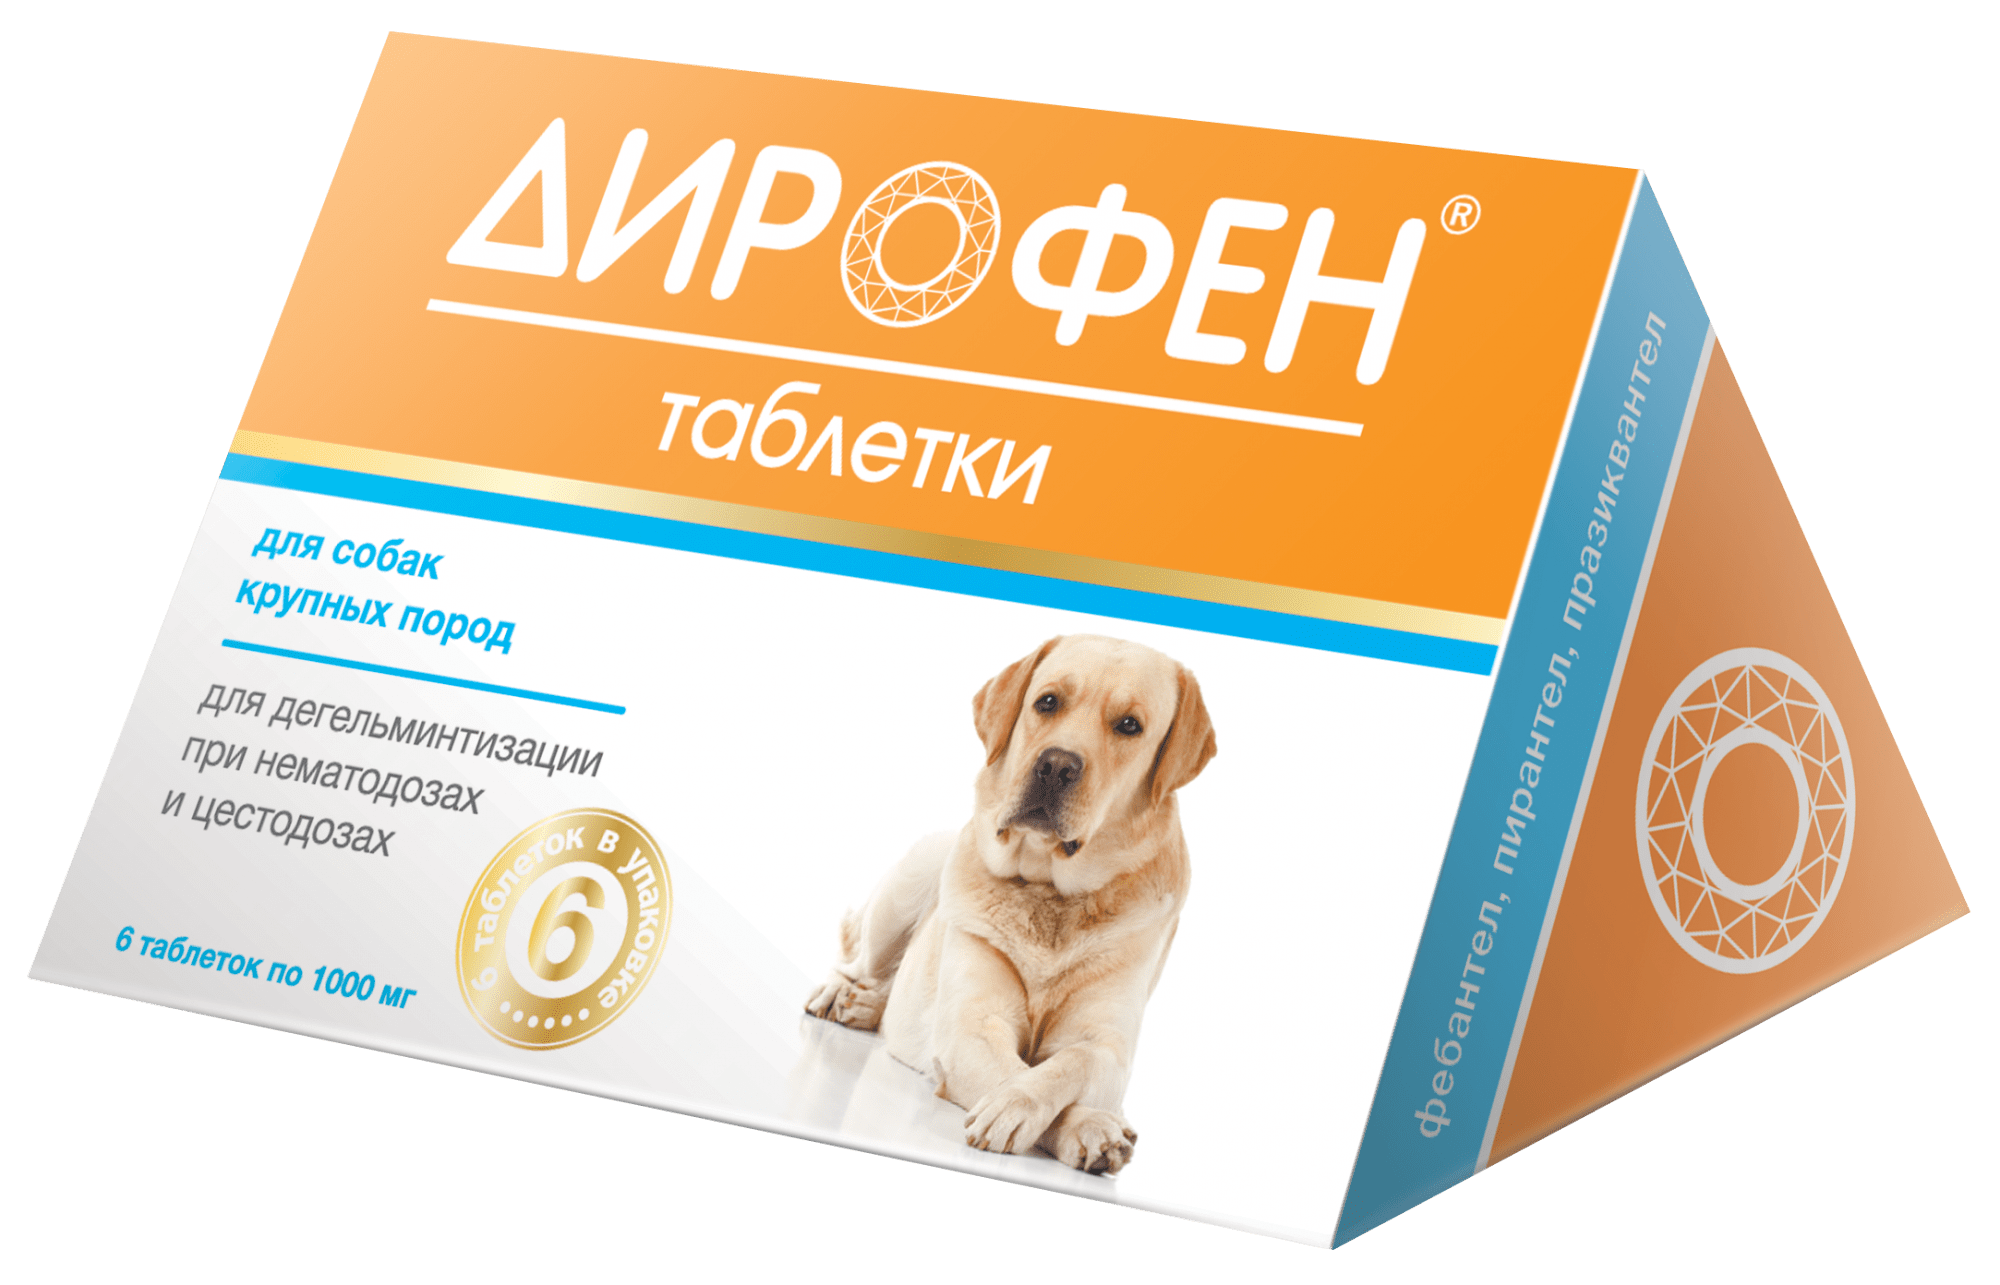 Дирофен ПЛЮС  для собак крупных пород (6 таблеток) фото, цены, купить